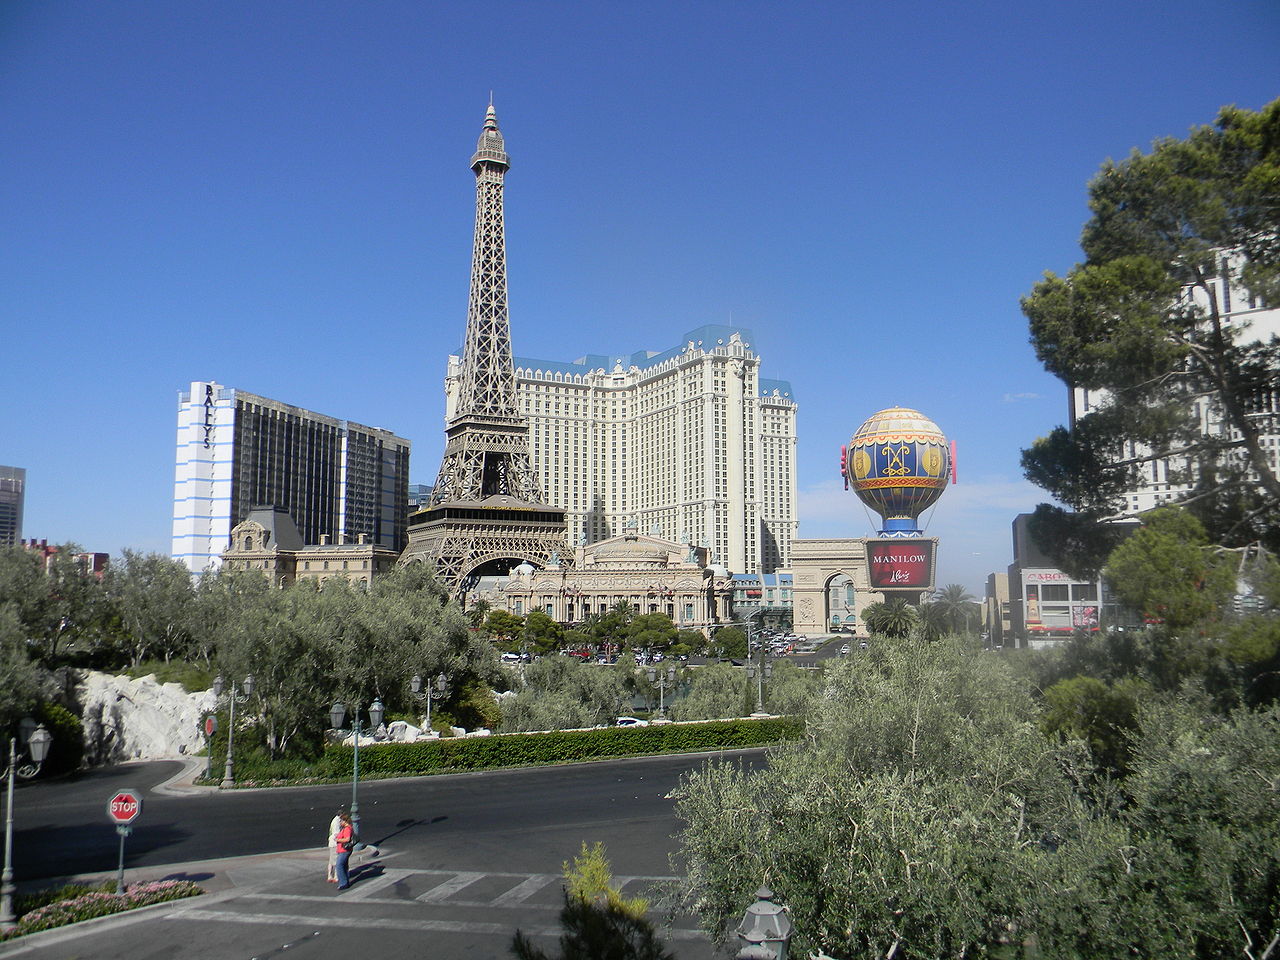 Paris streets in the hotel - Picture of Paris Las Vegas Hotel